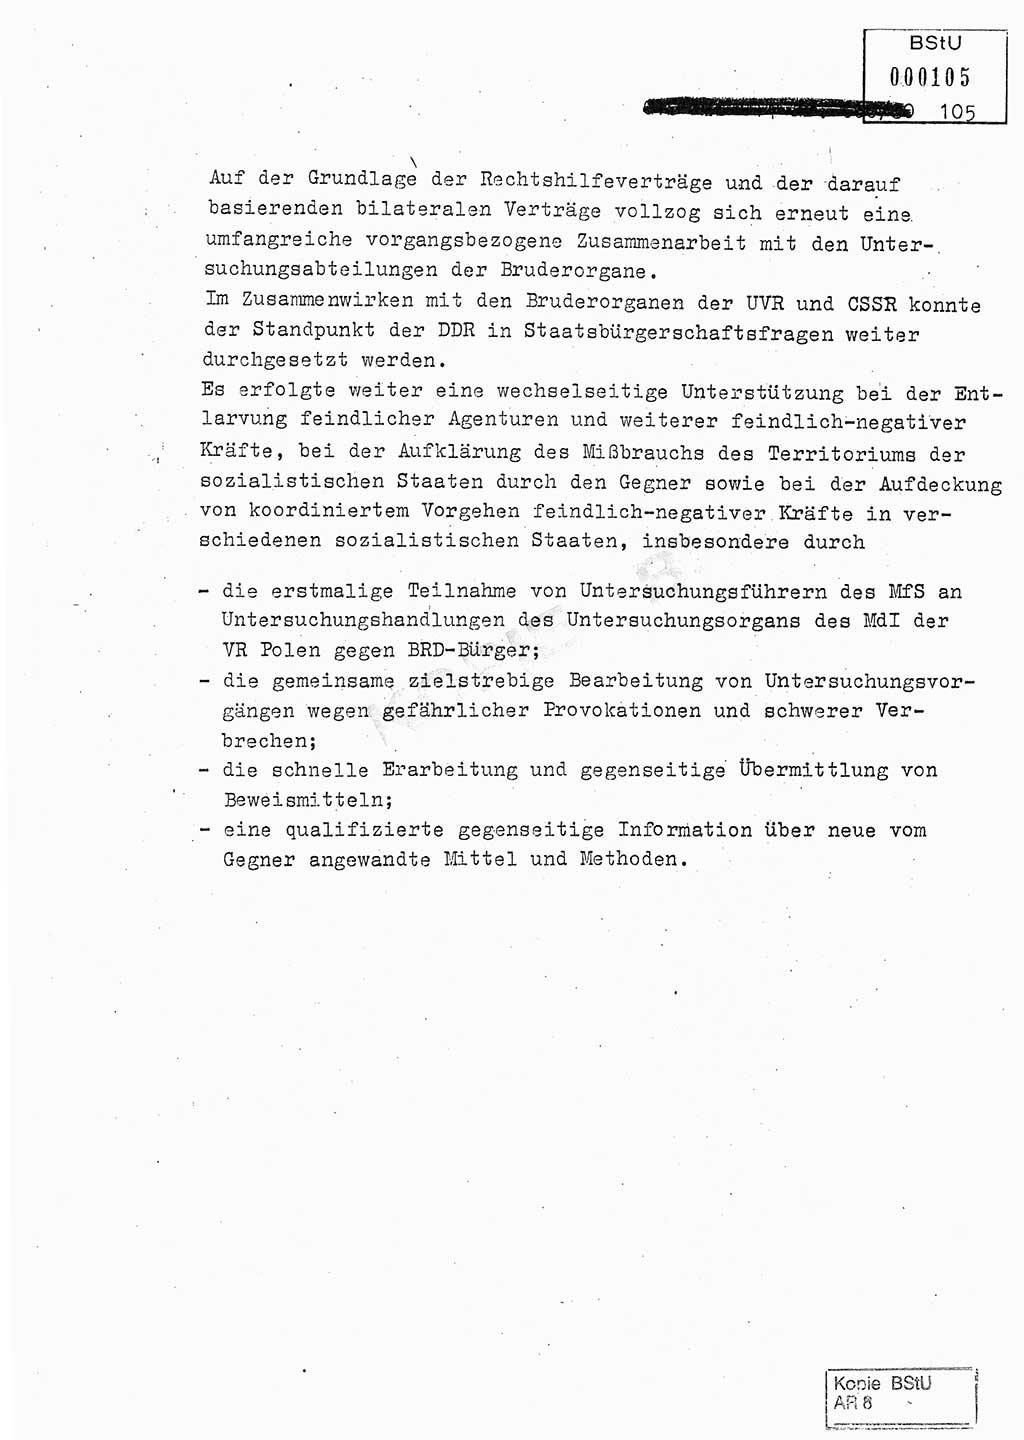 Jahresbericht der Hauptabteilung (HA) Ⅸ 1980, Analyse über die Entwicklung und die Wirksamkeit der politisch-operativen Arbeit der Linie Ⅸ in der Zeit vom 1. Januar 1980 bis 30. September 1980, Ministerium für Staatssicherheit (MfS) der Deutschen Demokratischen Republik (DDR), Hauptabteilung Ⅸ, Geheime Verschlußsache (GVS) 014-660/80, Berlin 1980, Seite 105 (Anal. MfS DDR HA Ⅸ GVS 014-660/80 1980, S. 105)